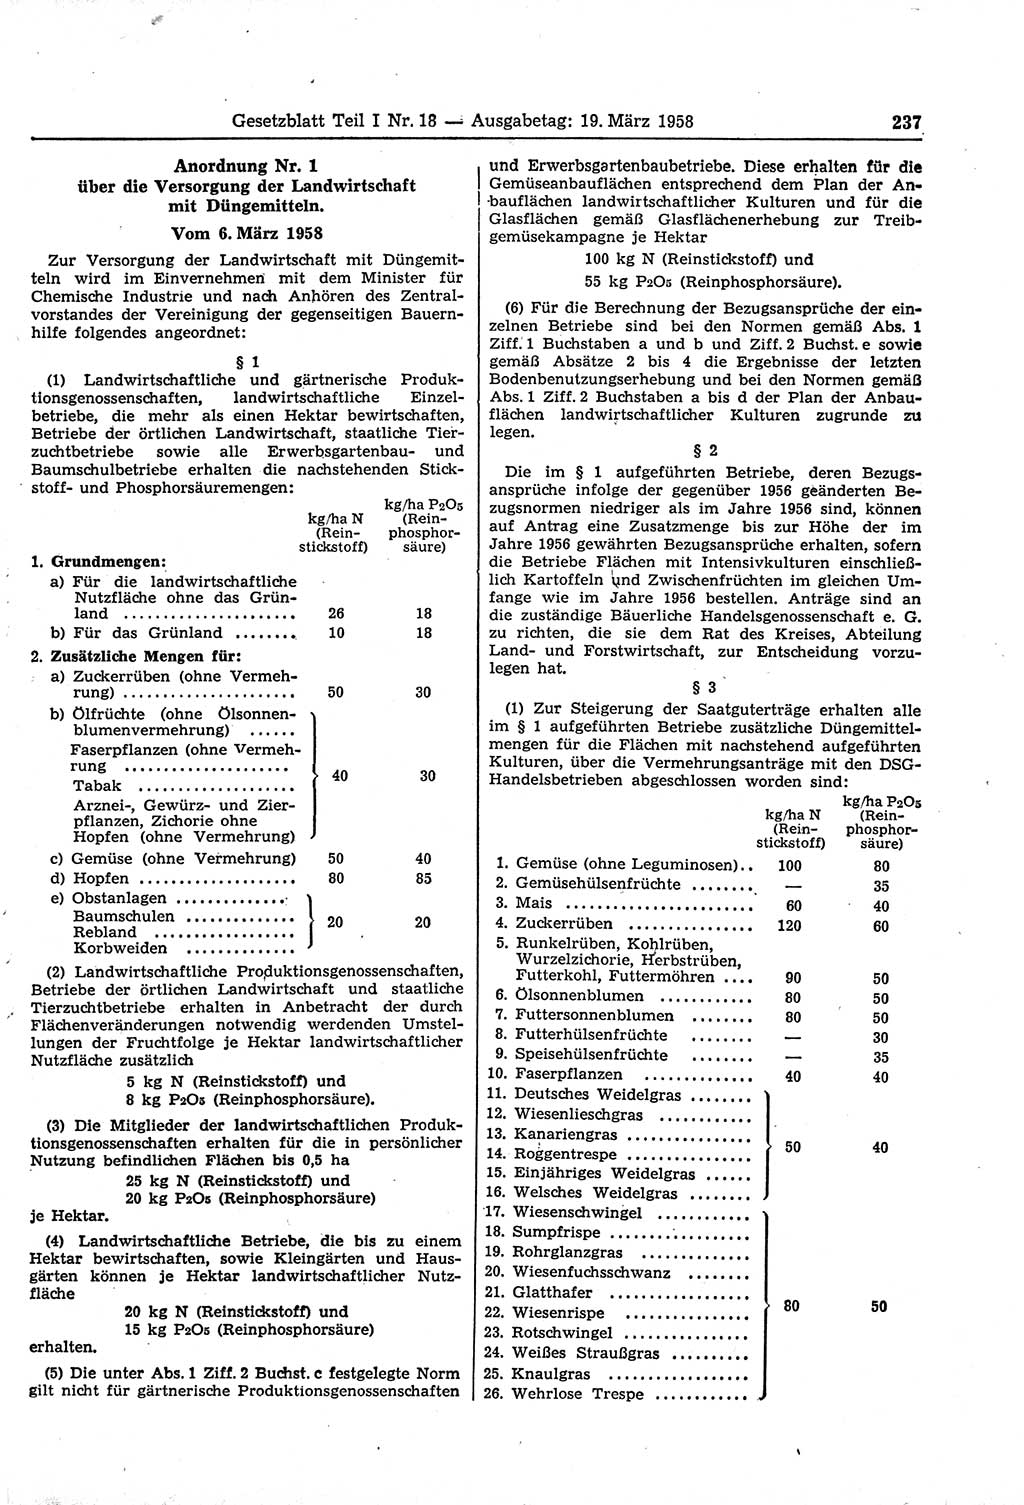 Gesetzblatt (GBl.) der Deutschen Demokratischen Republik (DDR) Teil Ⅰ 1958, Seite 237 (GBl. DDR Ⅰ 1958, S. 237)